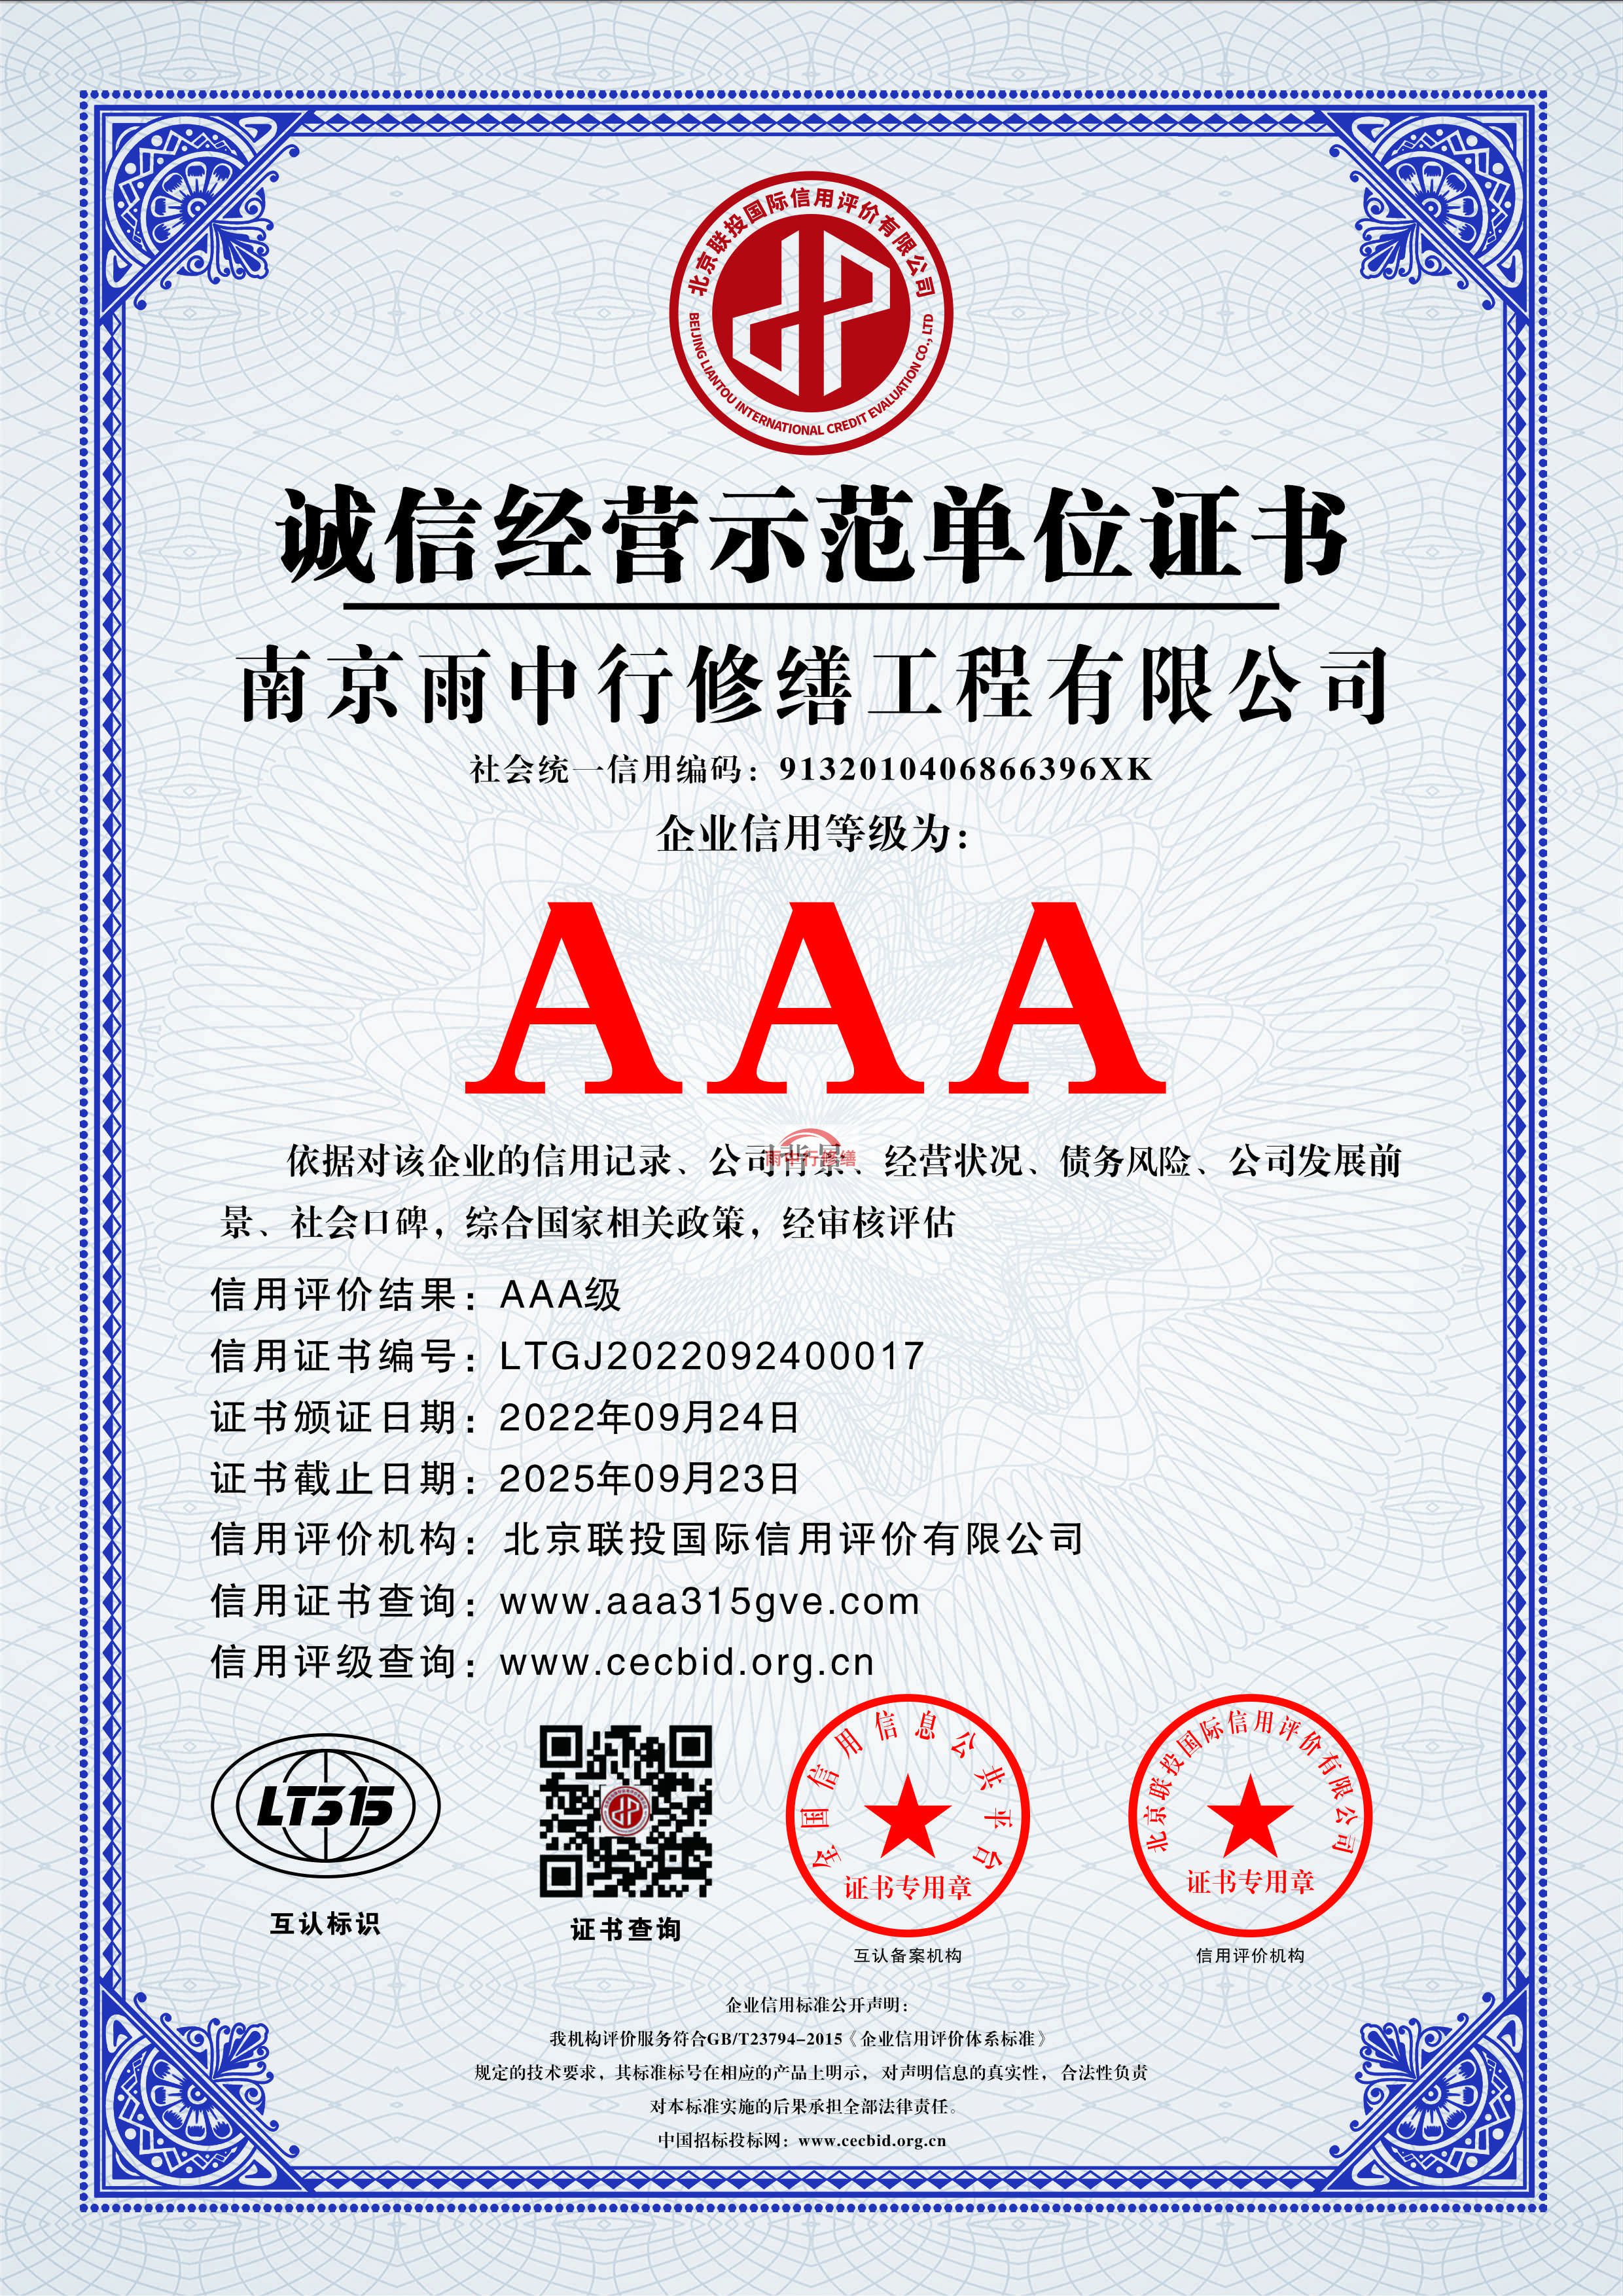 上海雨中行修缮授予AAA级企业